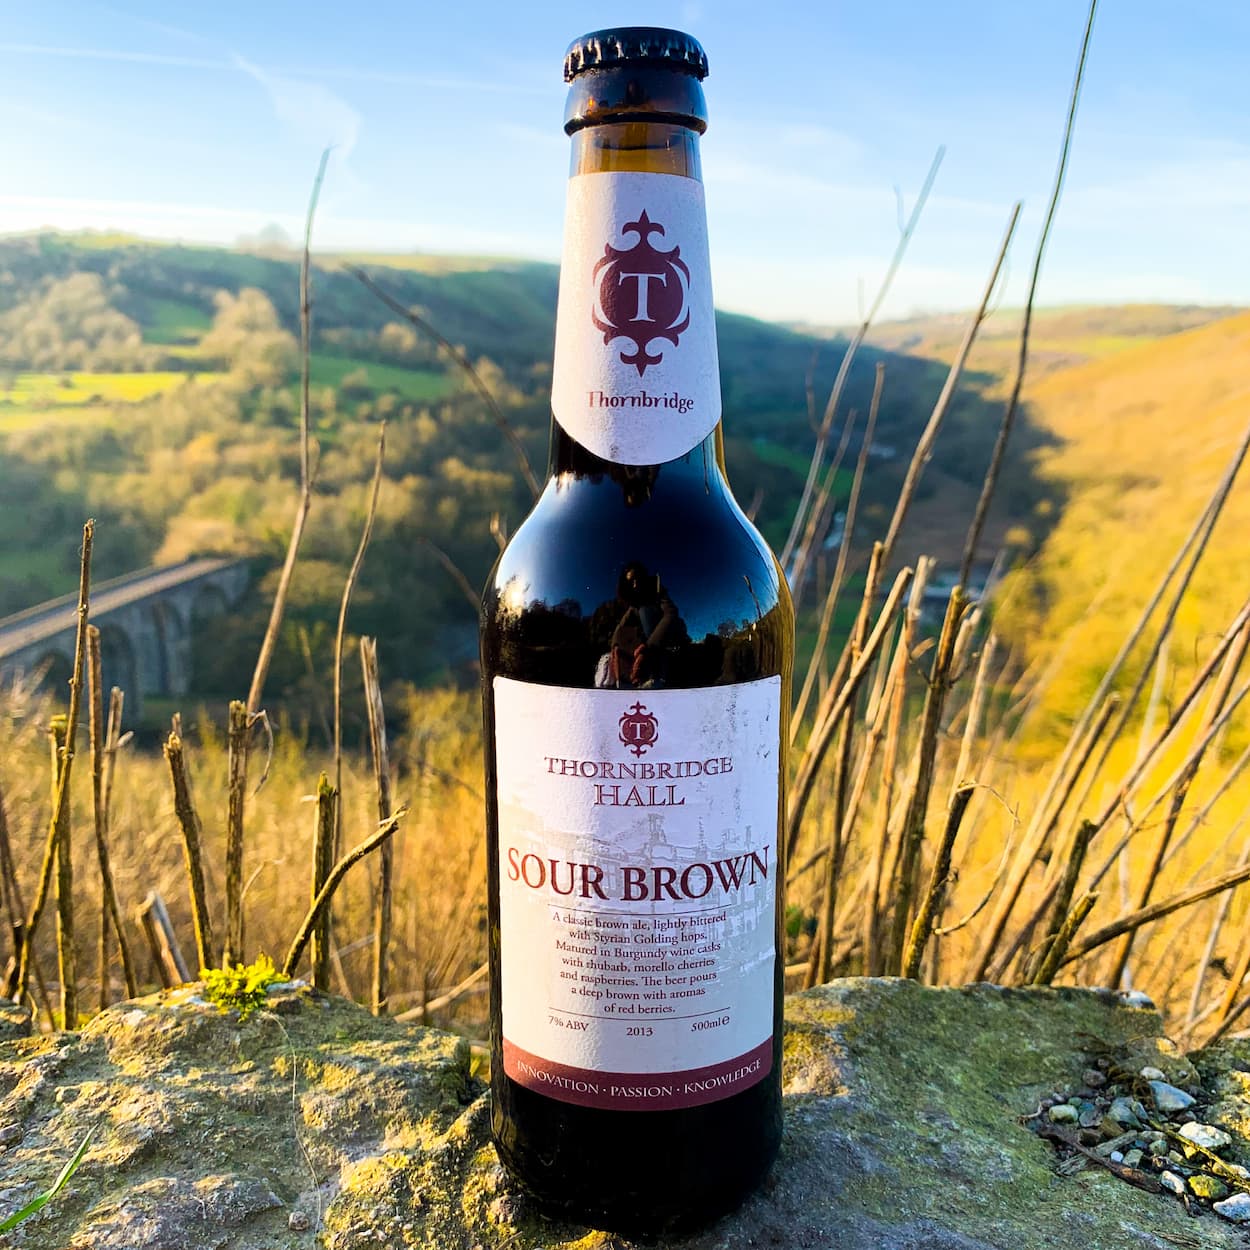 Sour Brown, 7% Brown Ale matured in burgundy casks with rhubarb, cherries and raspberries 500ml bottle Beer - Cellar Reserve Thornbridge